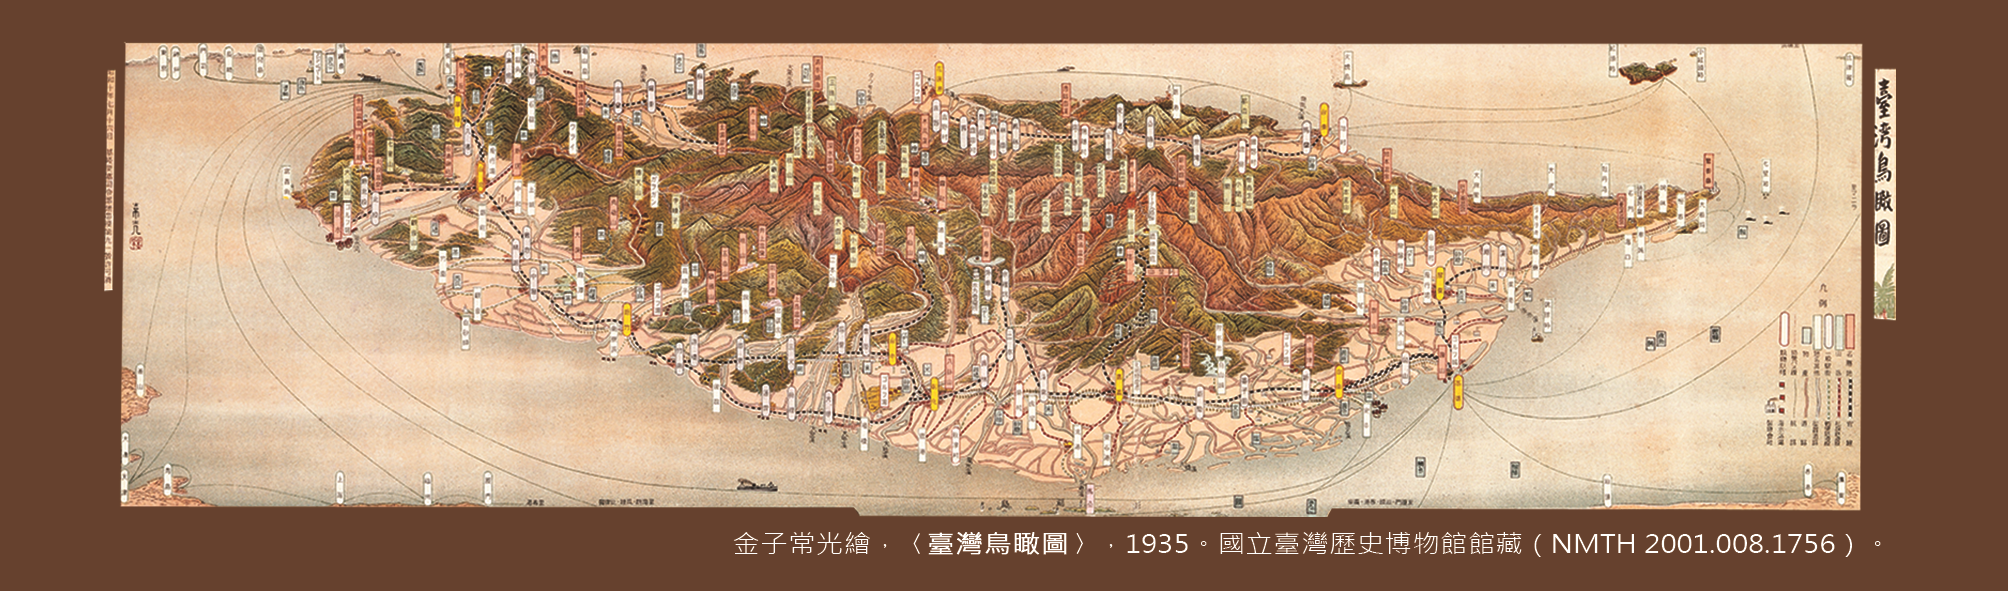 地圖書籤4(1935年-臺灣)